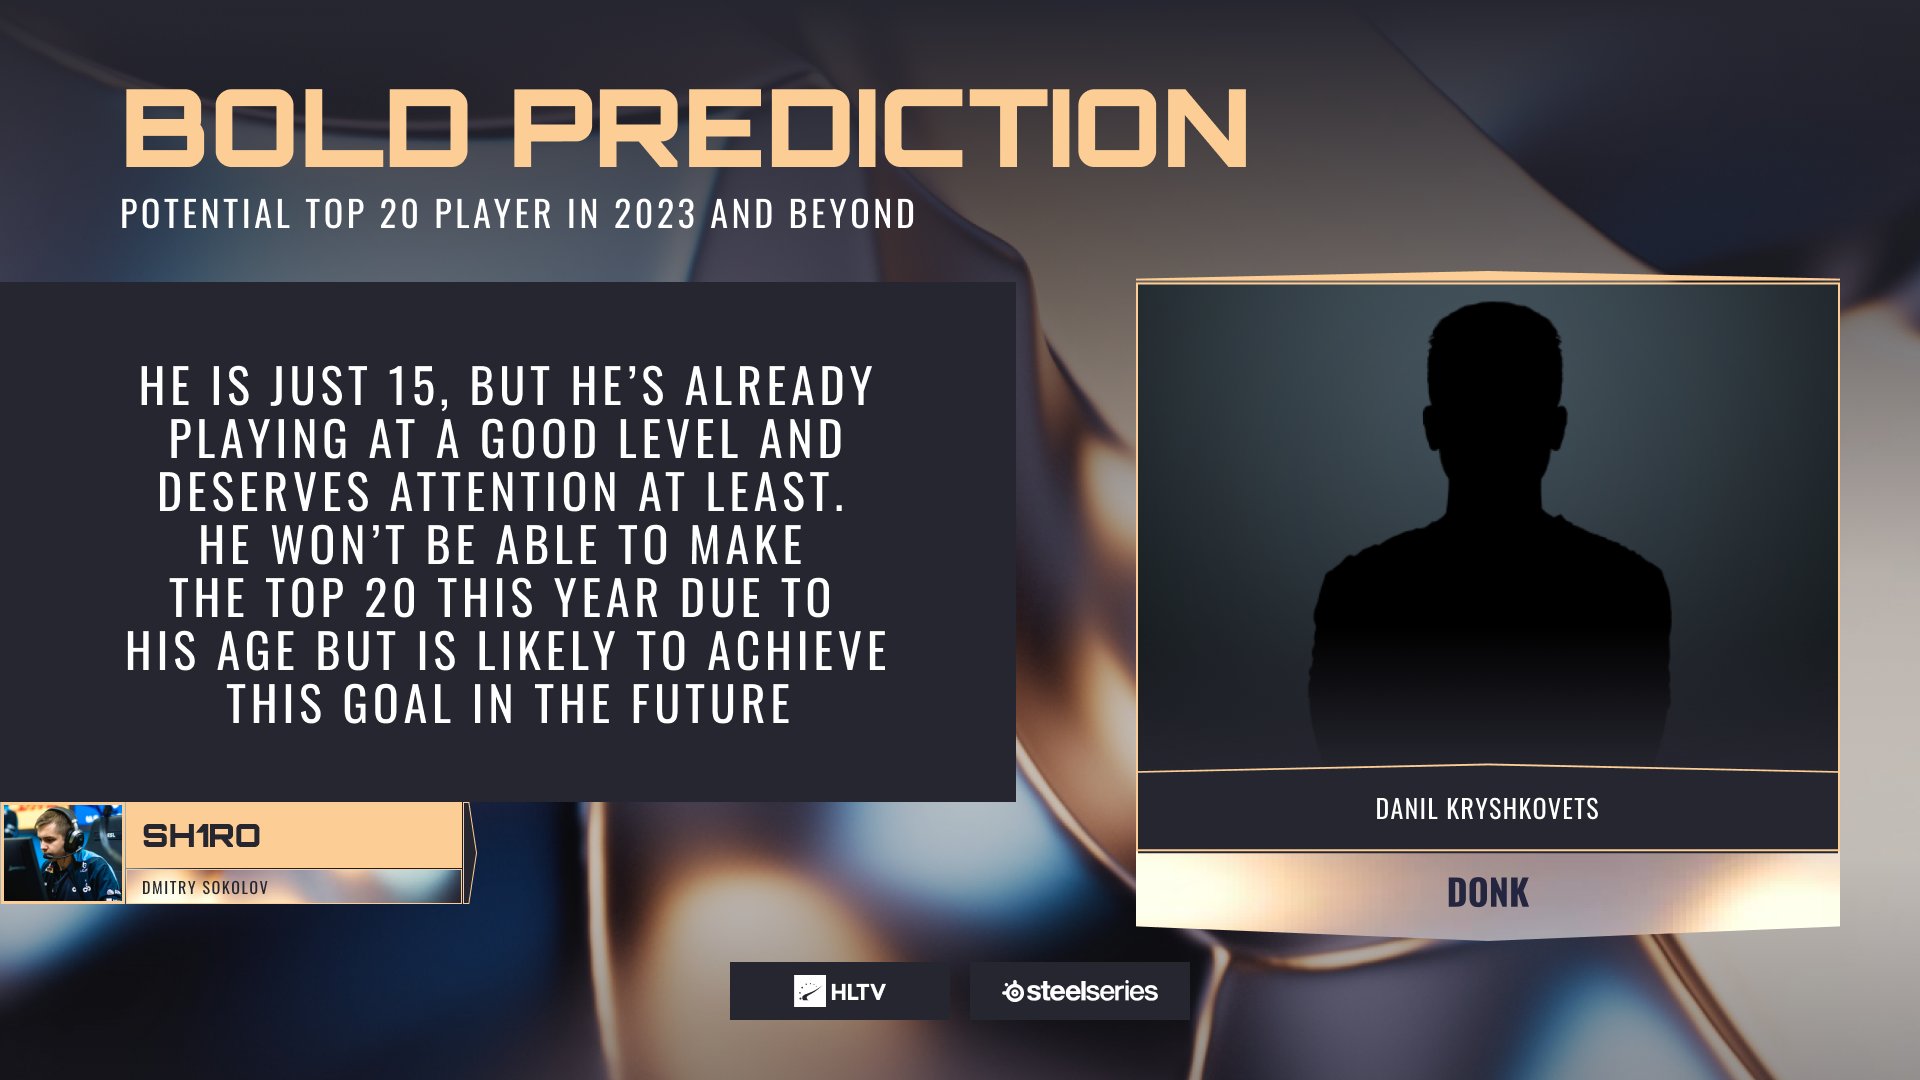 Sh1ro выбрал игрока академии Spirit в качестве претендента на попадание в рейтинг лучших игроков 2023 года